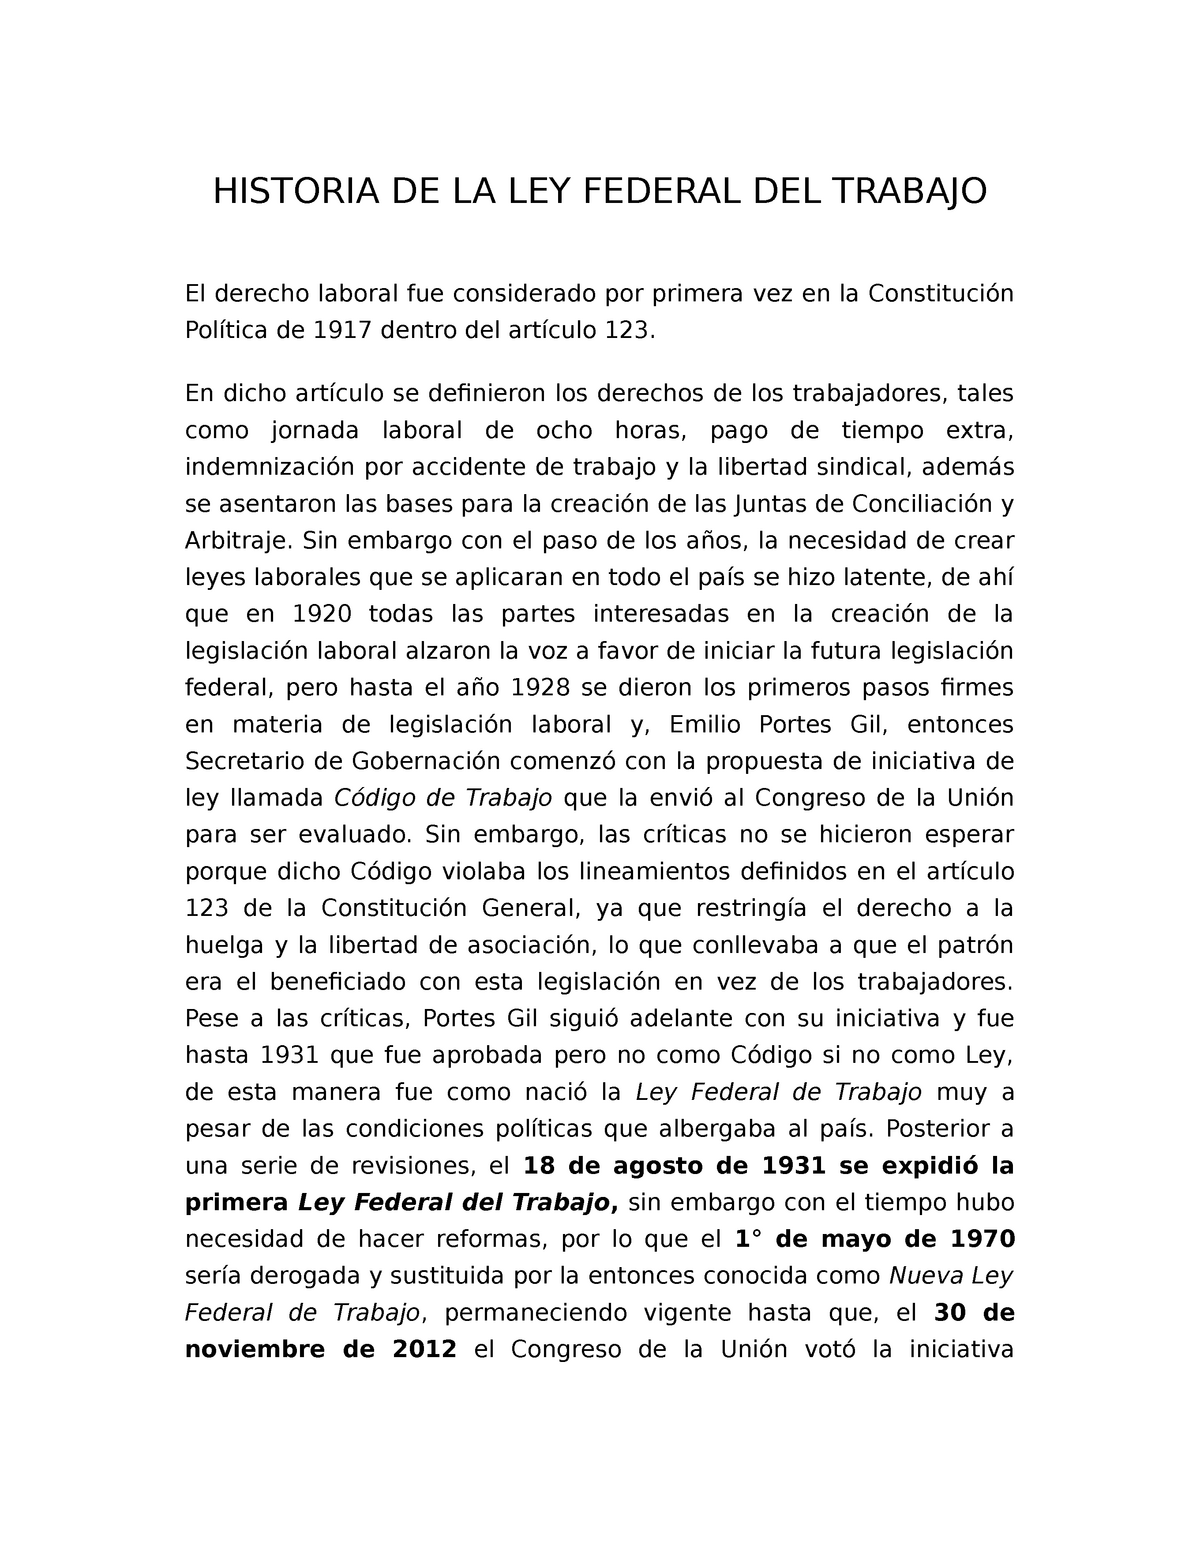 Breve Historia De La Ley Federal Del Trabajo Historia De La Ley